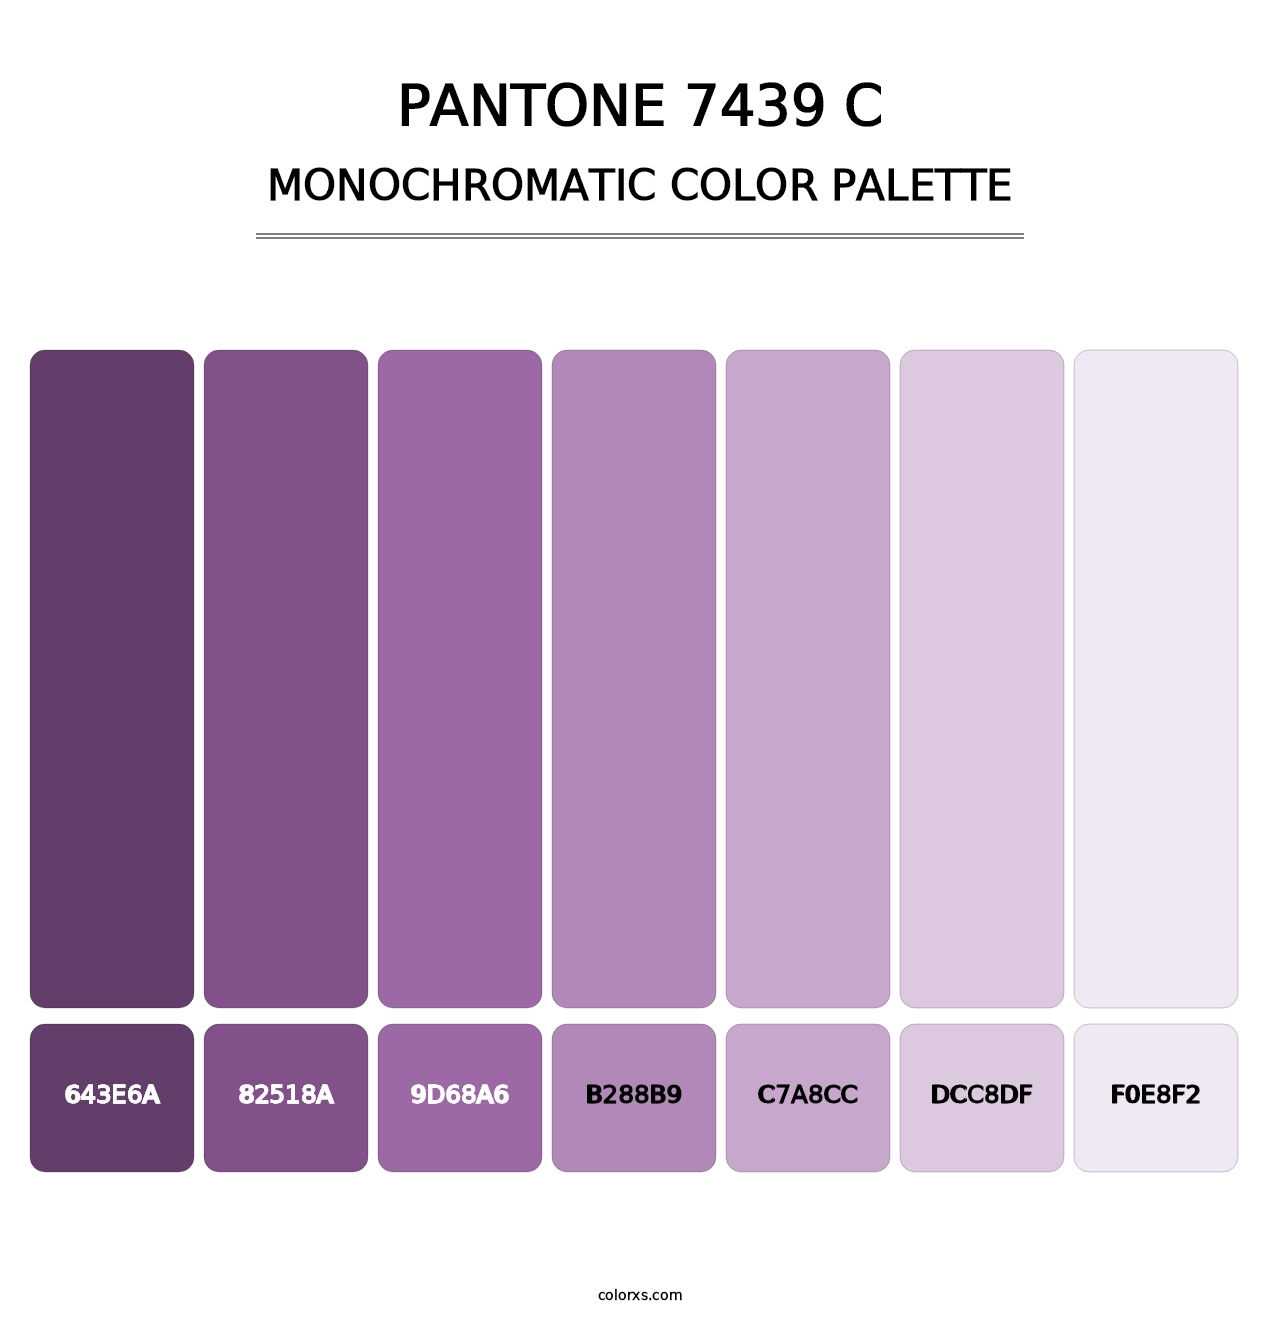 PANTONE 7439 C - Monochromatic Color Palette